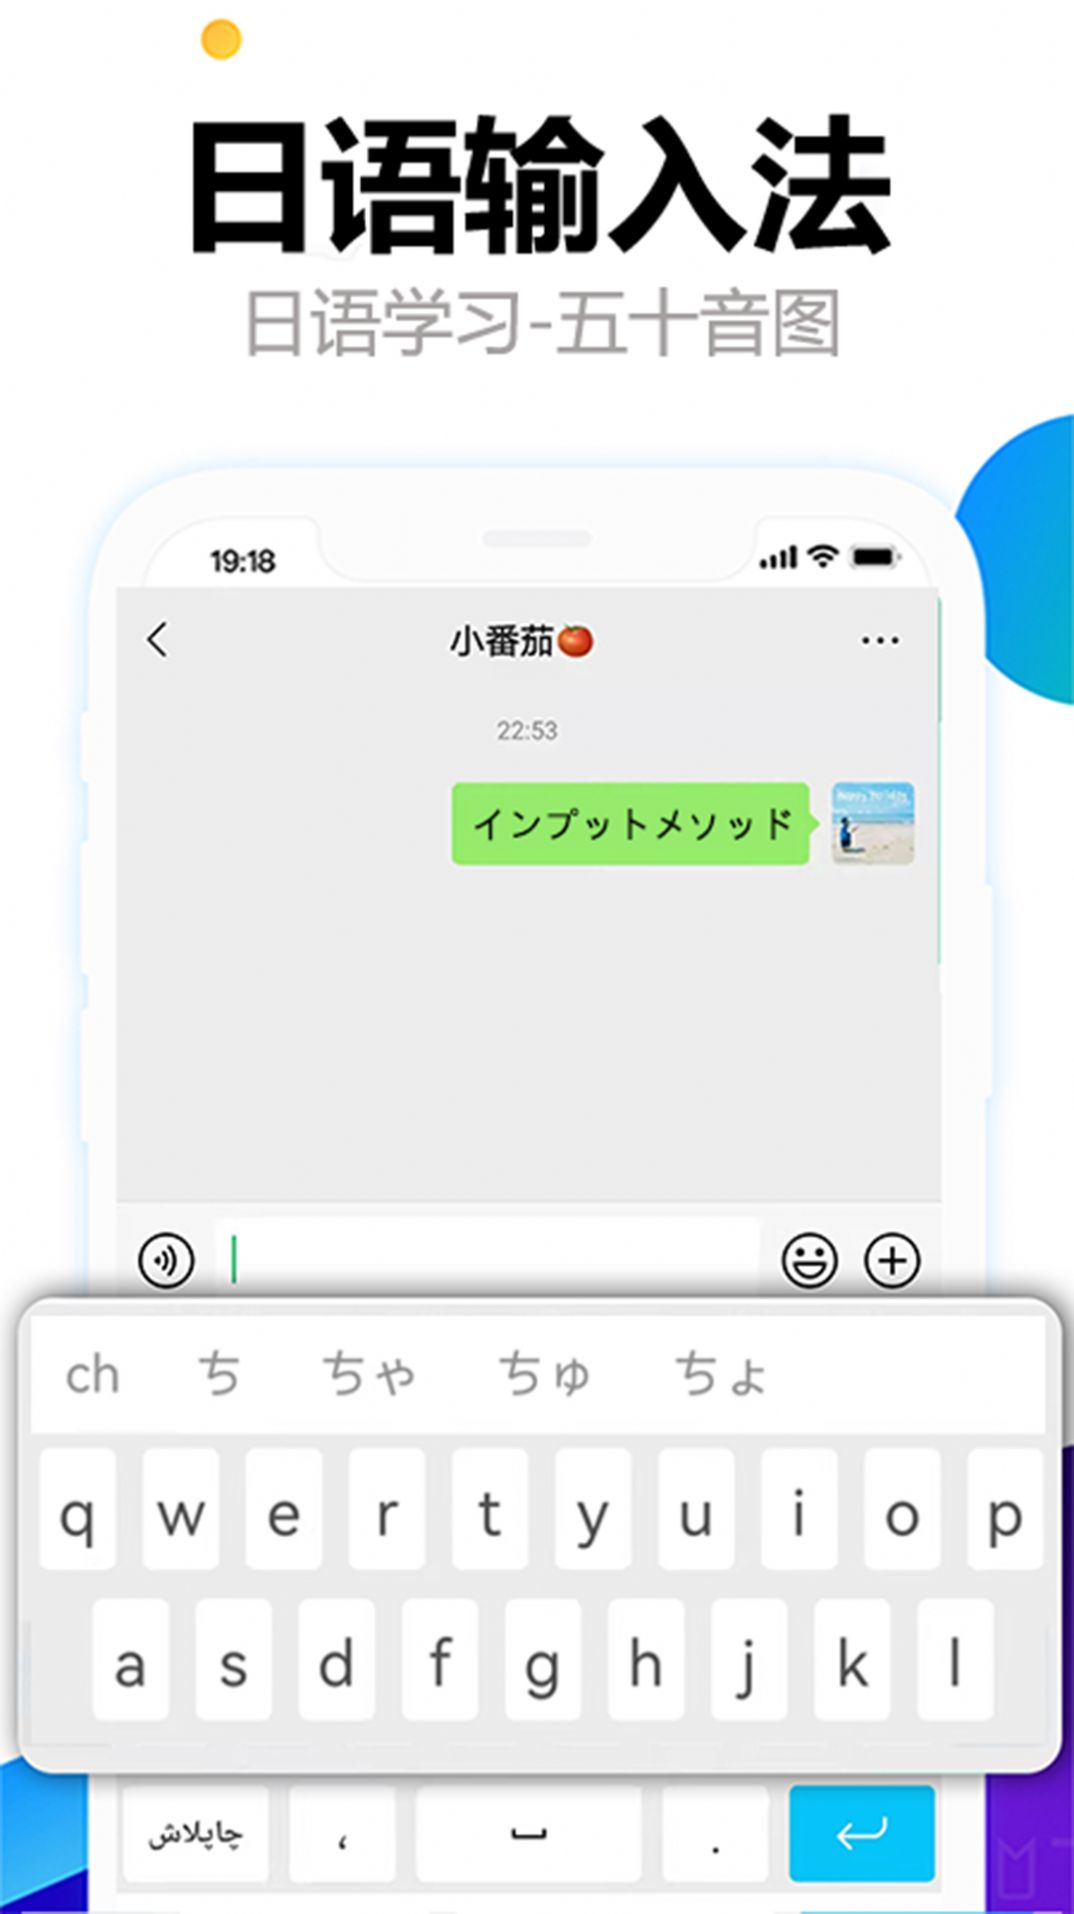 日语输入法五十音图app图2